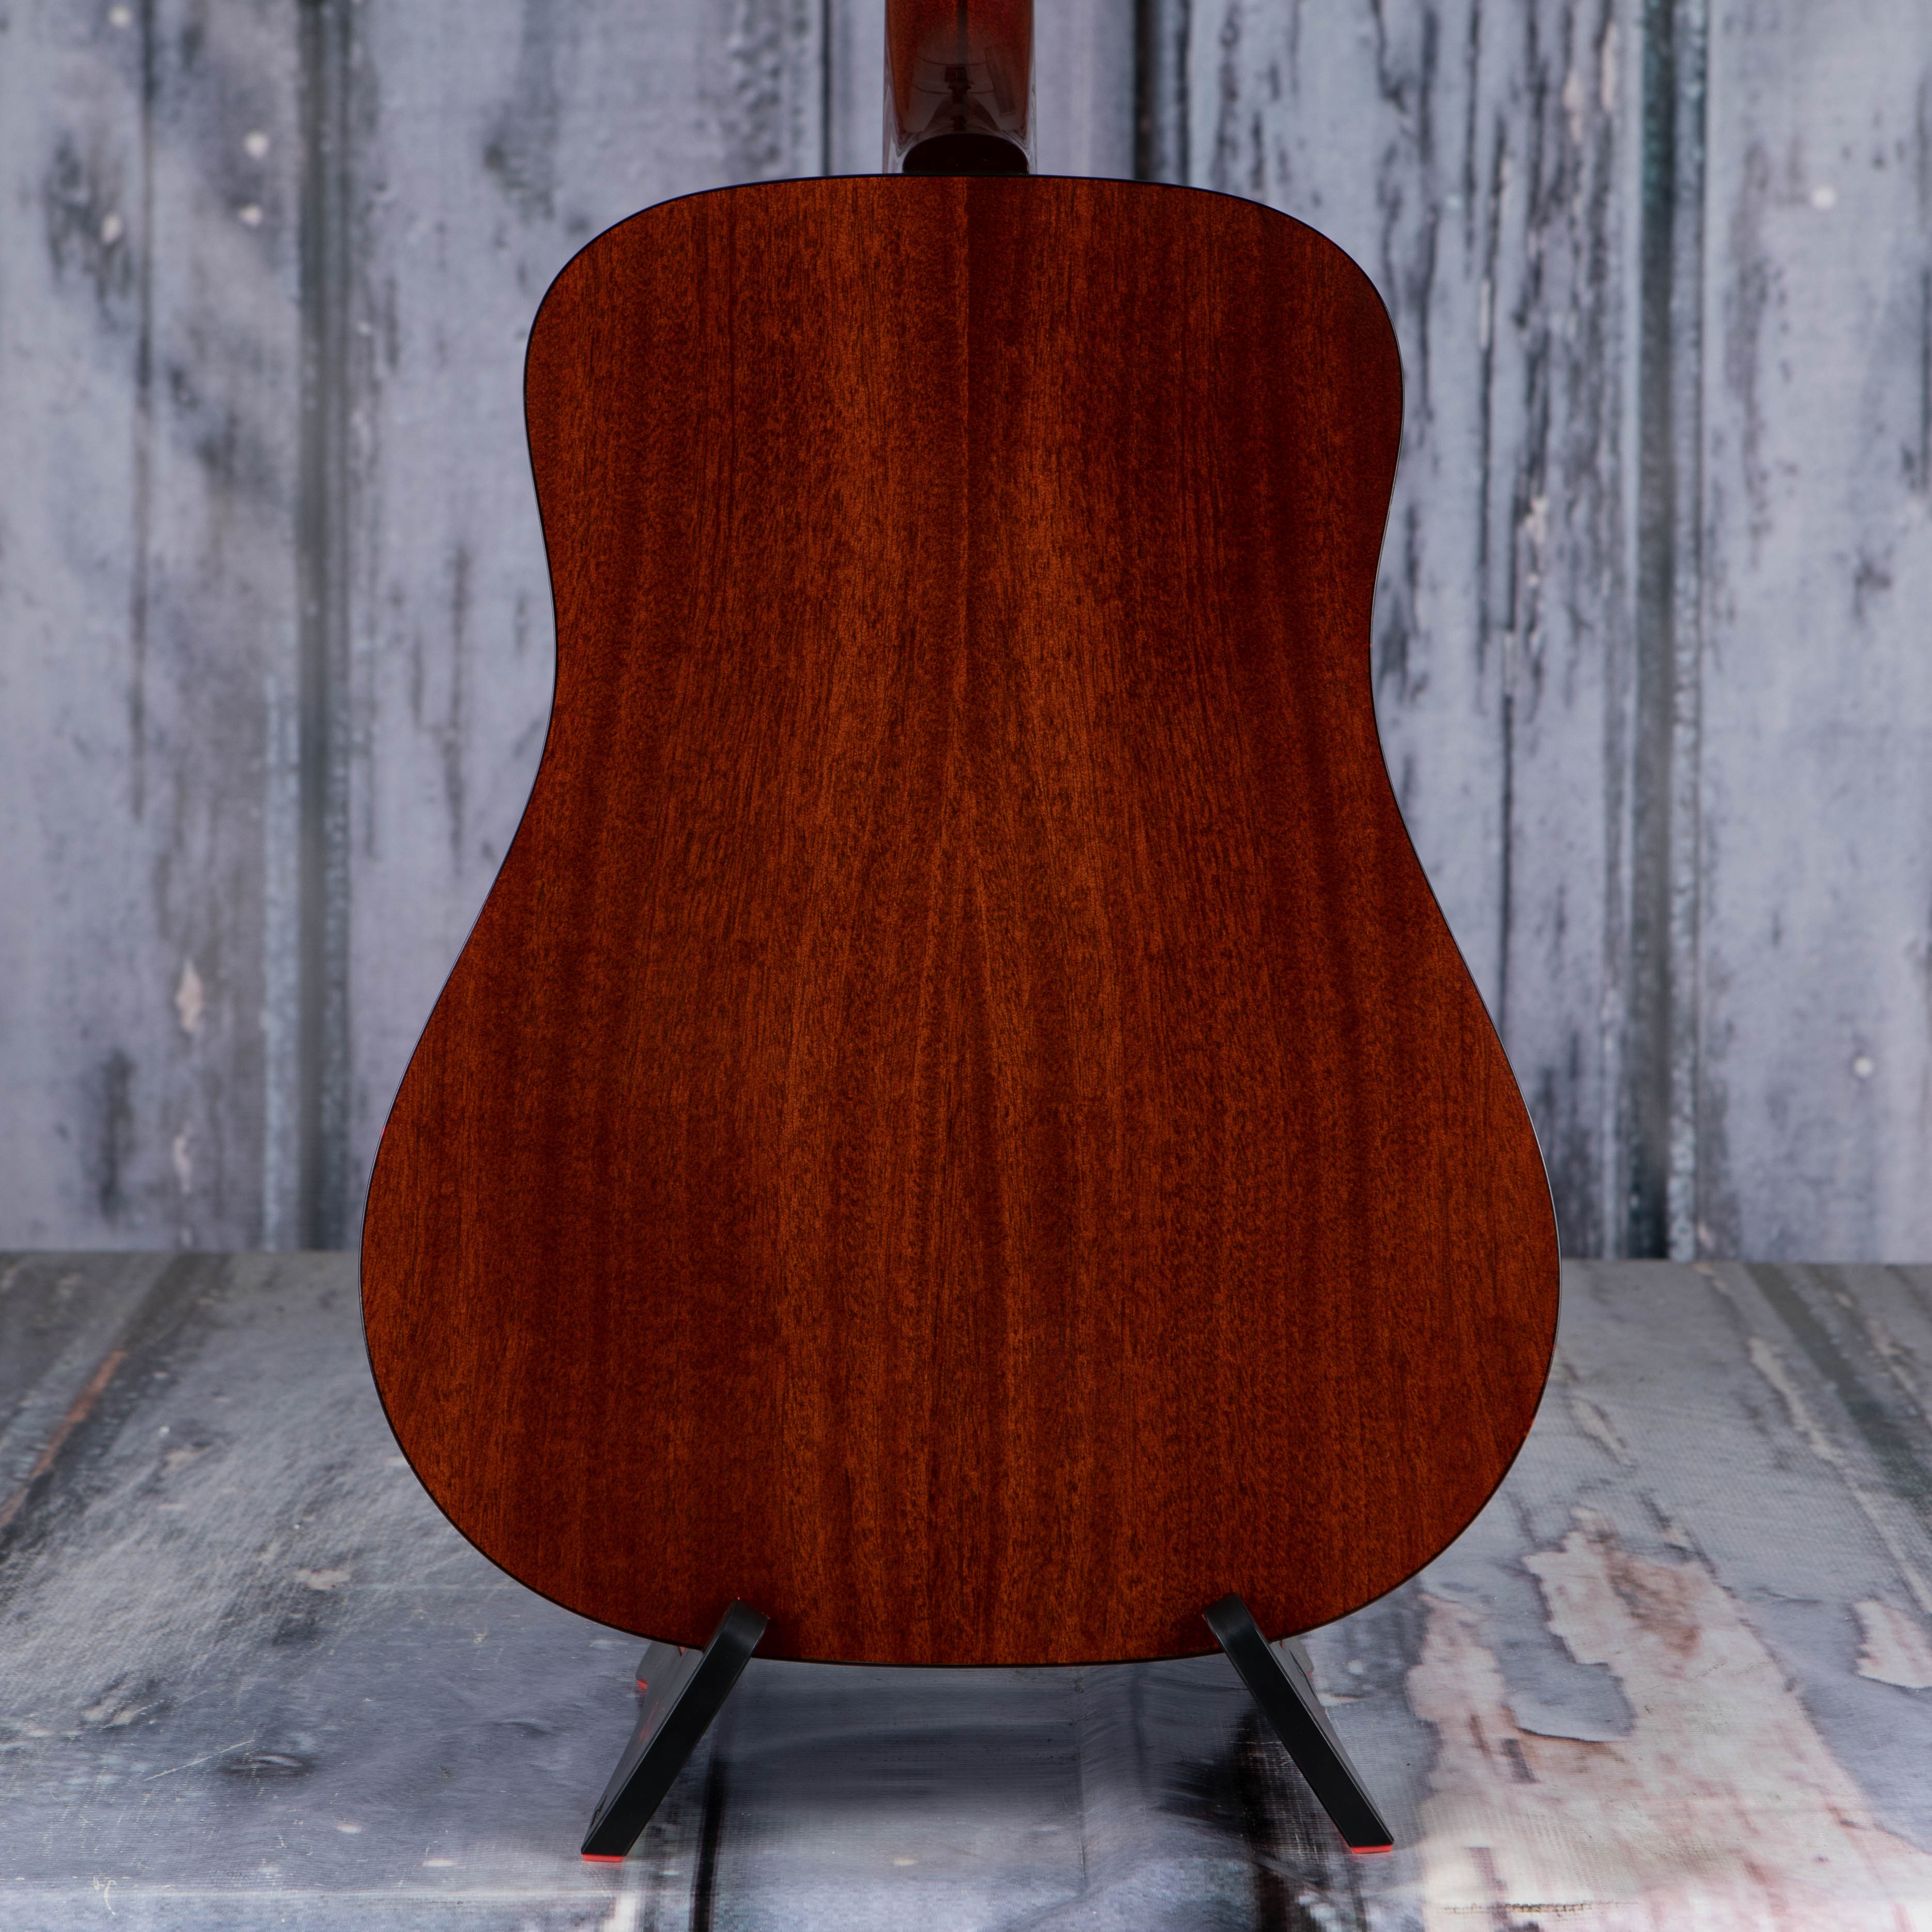 Guild D-40 Traditional Acoustic Guitar, Antique Burst, back closeup